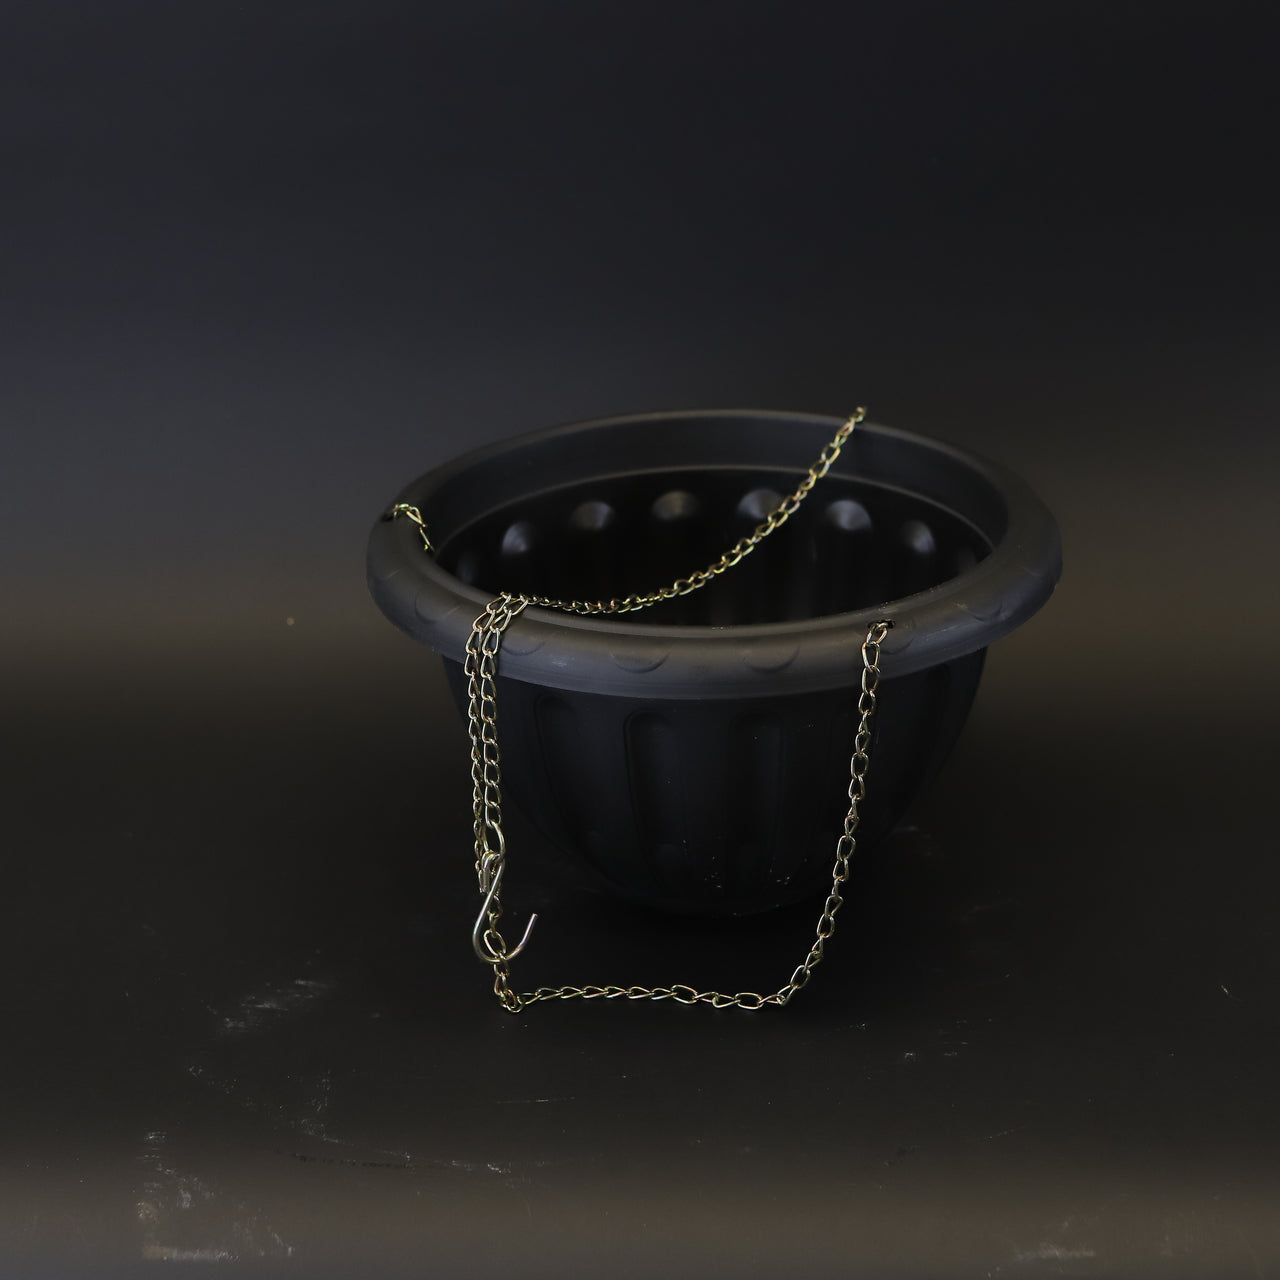 HCHD9288 - Black Hanging Basket